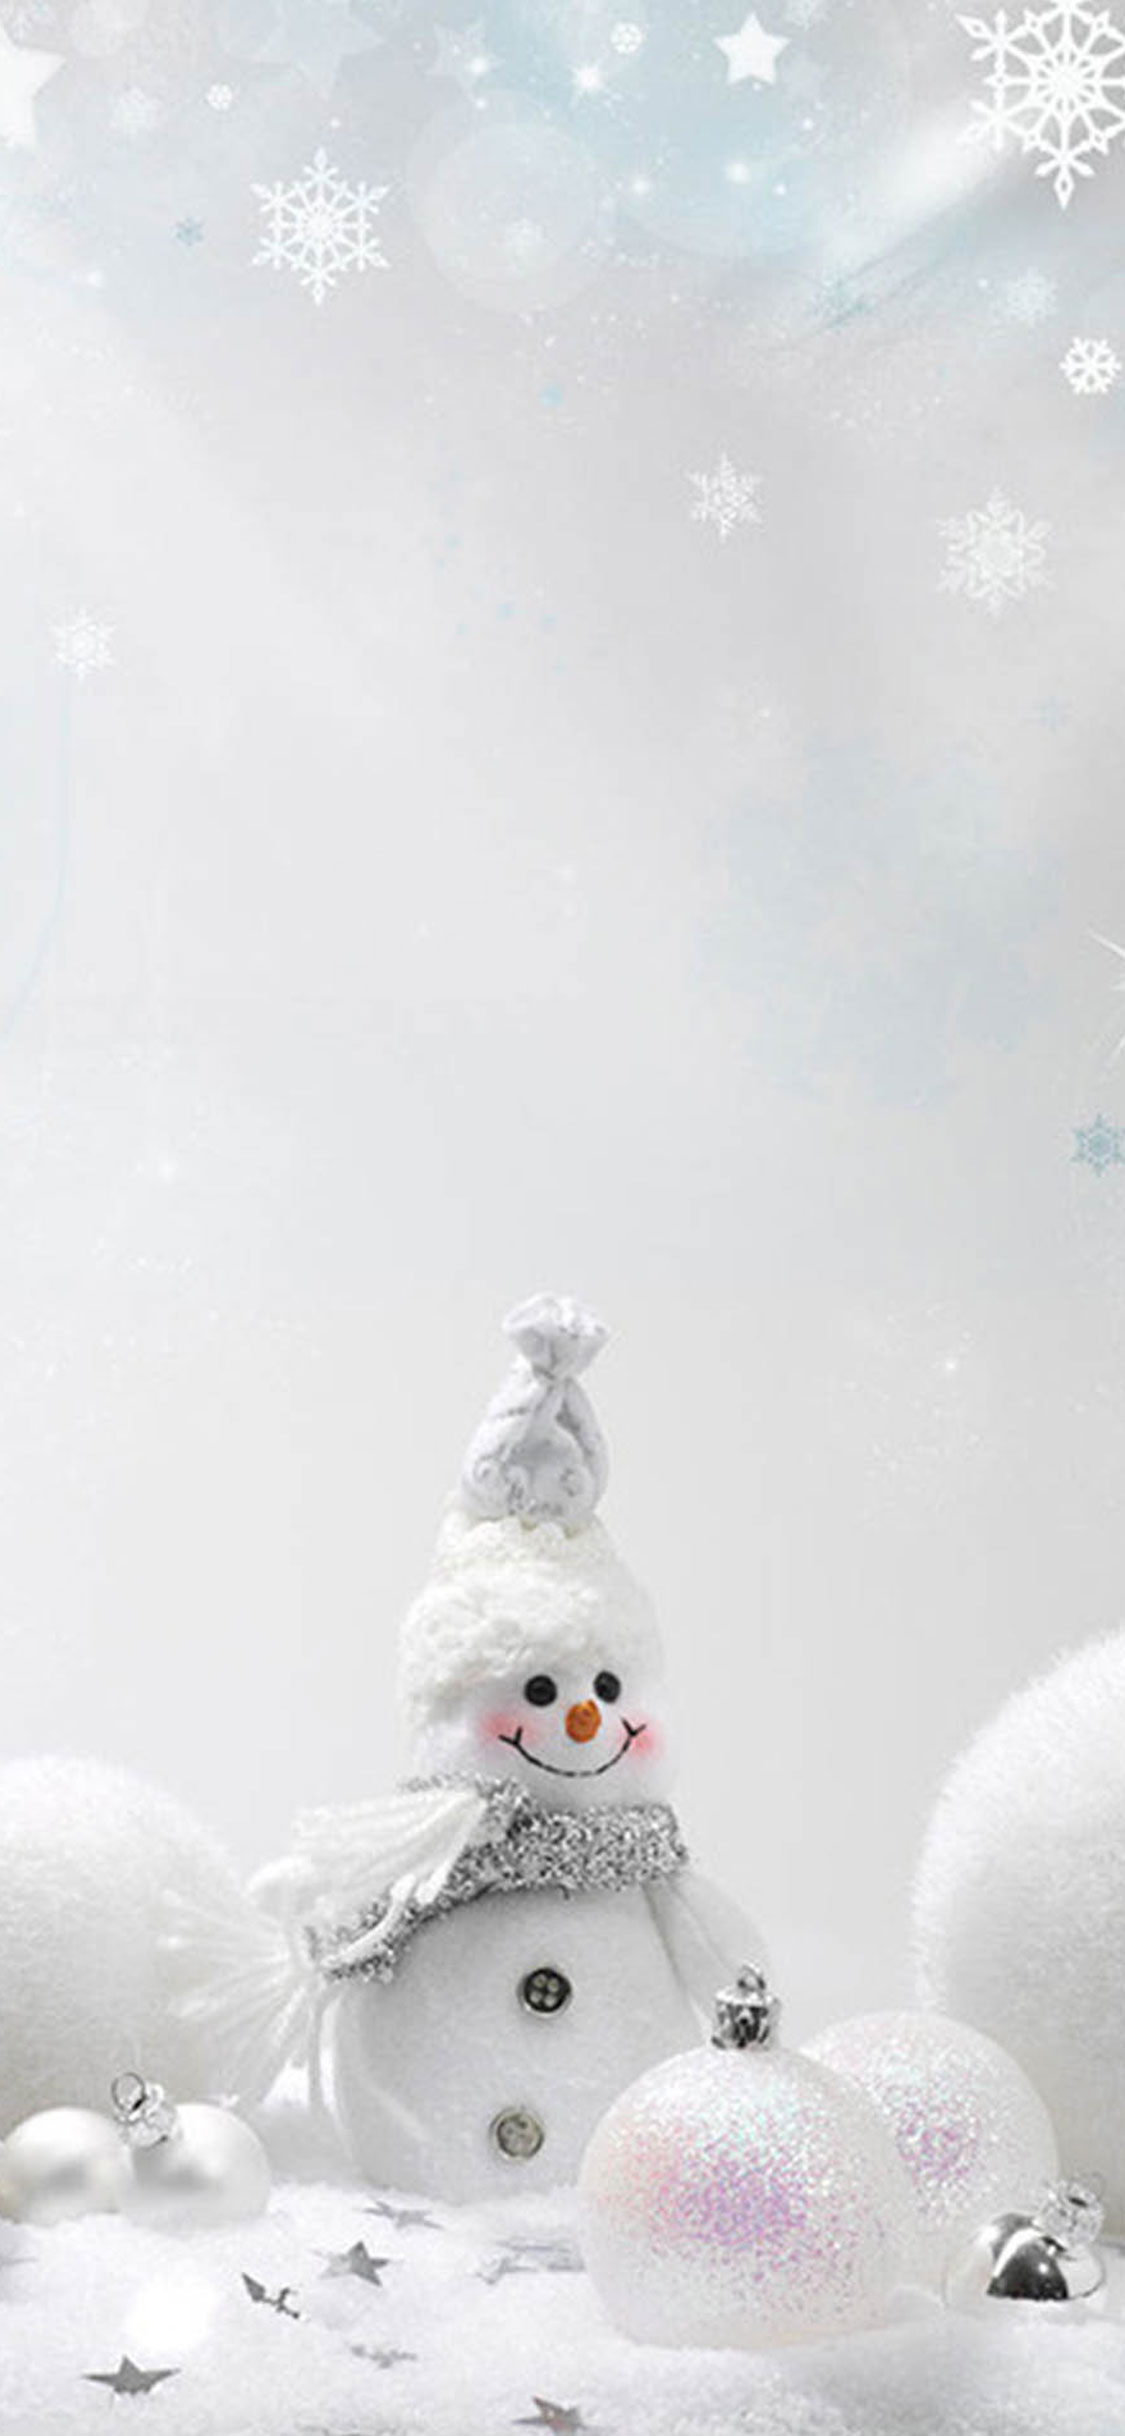 크리스마스 눈사람 벽지,하얀,눈사람,눈,소설 속의 인물,겨울